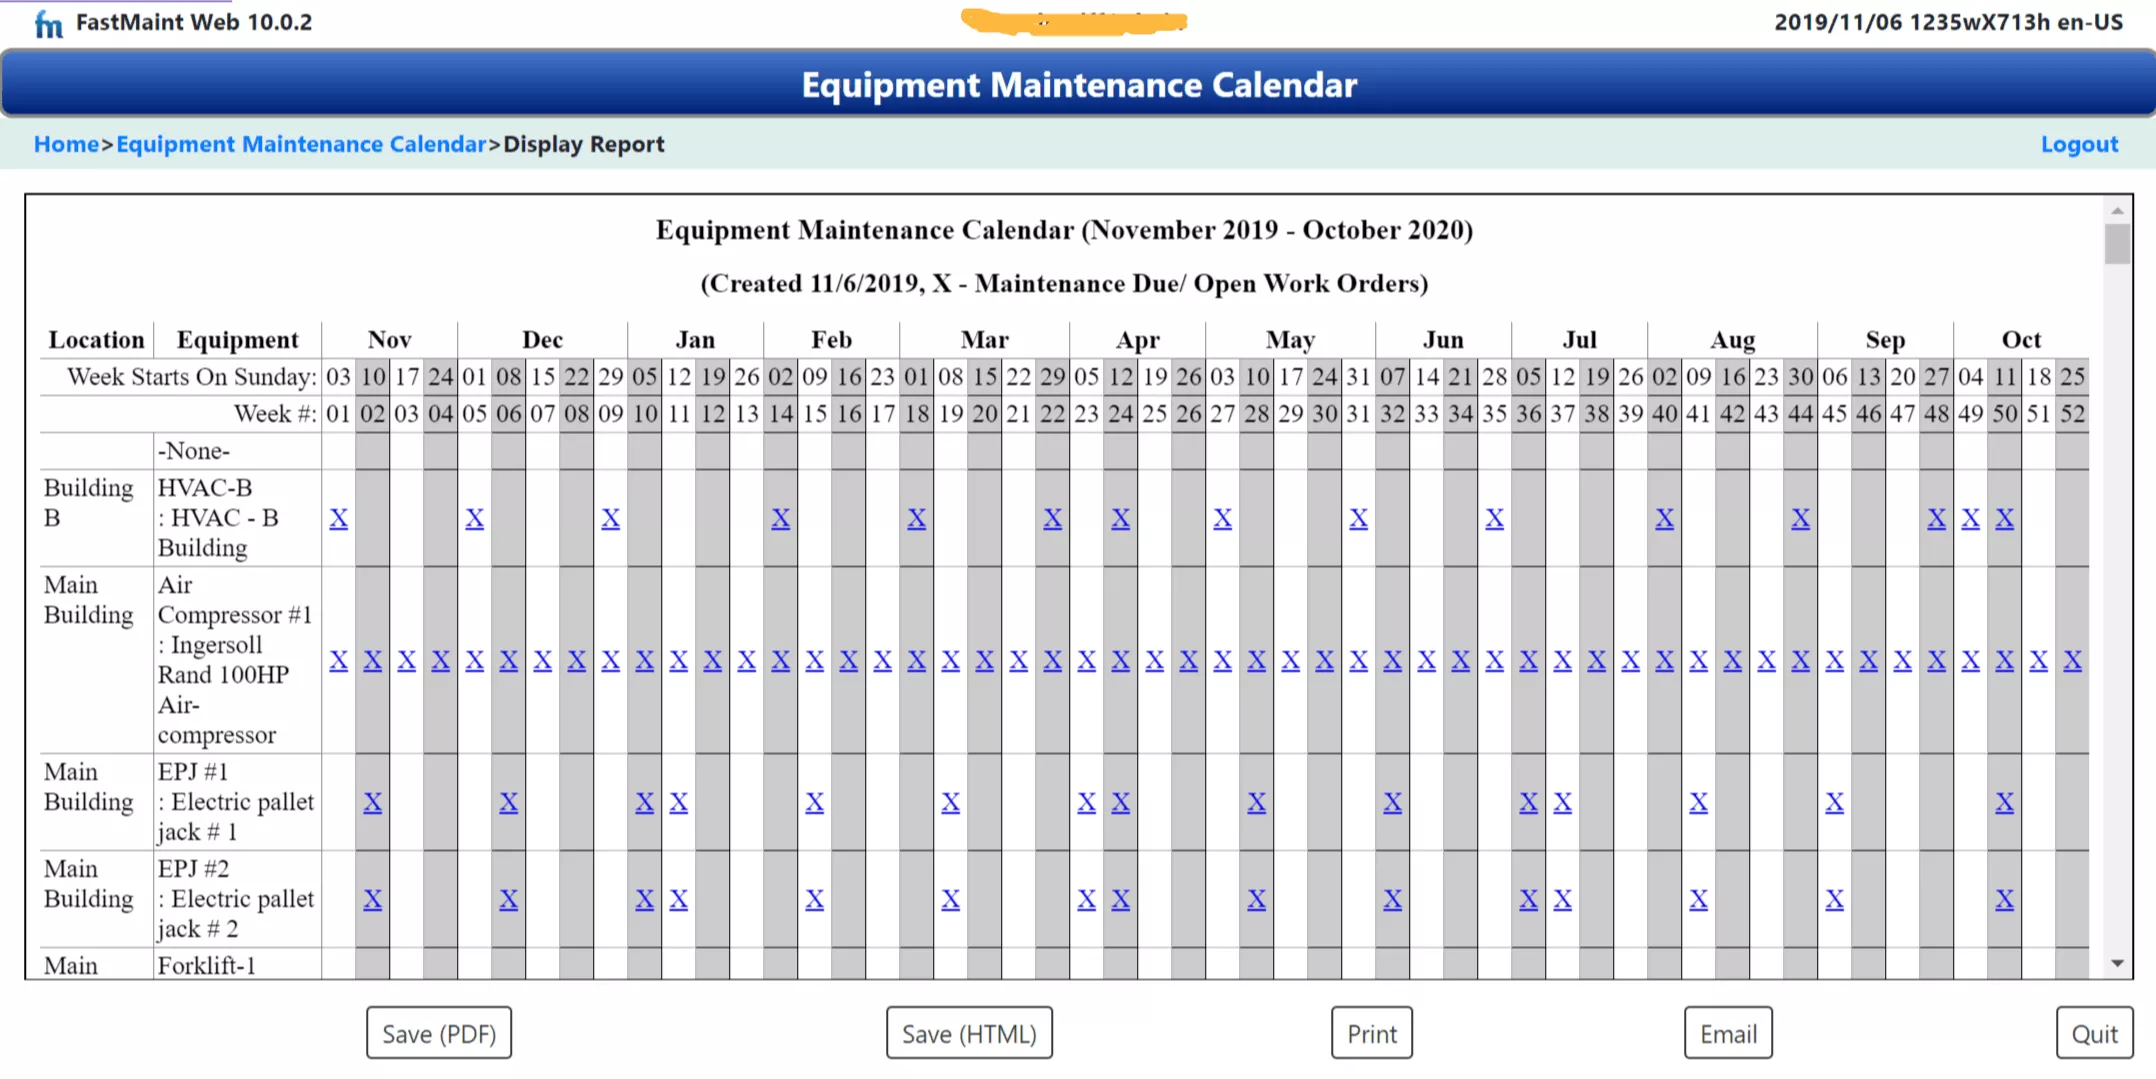 preventive maintenance scheduling with an equipment maintenance calendar